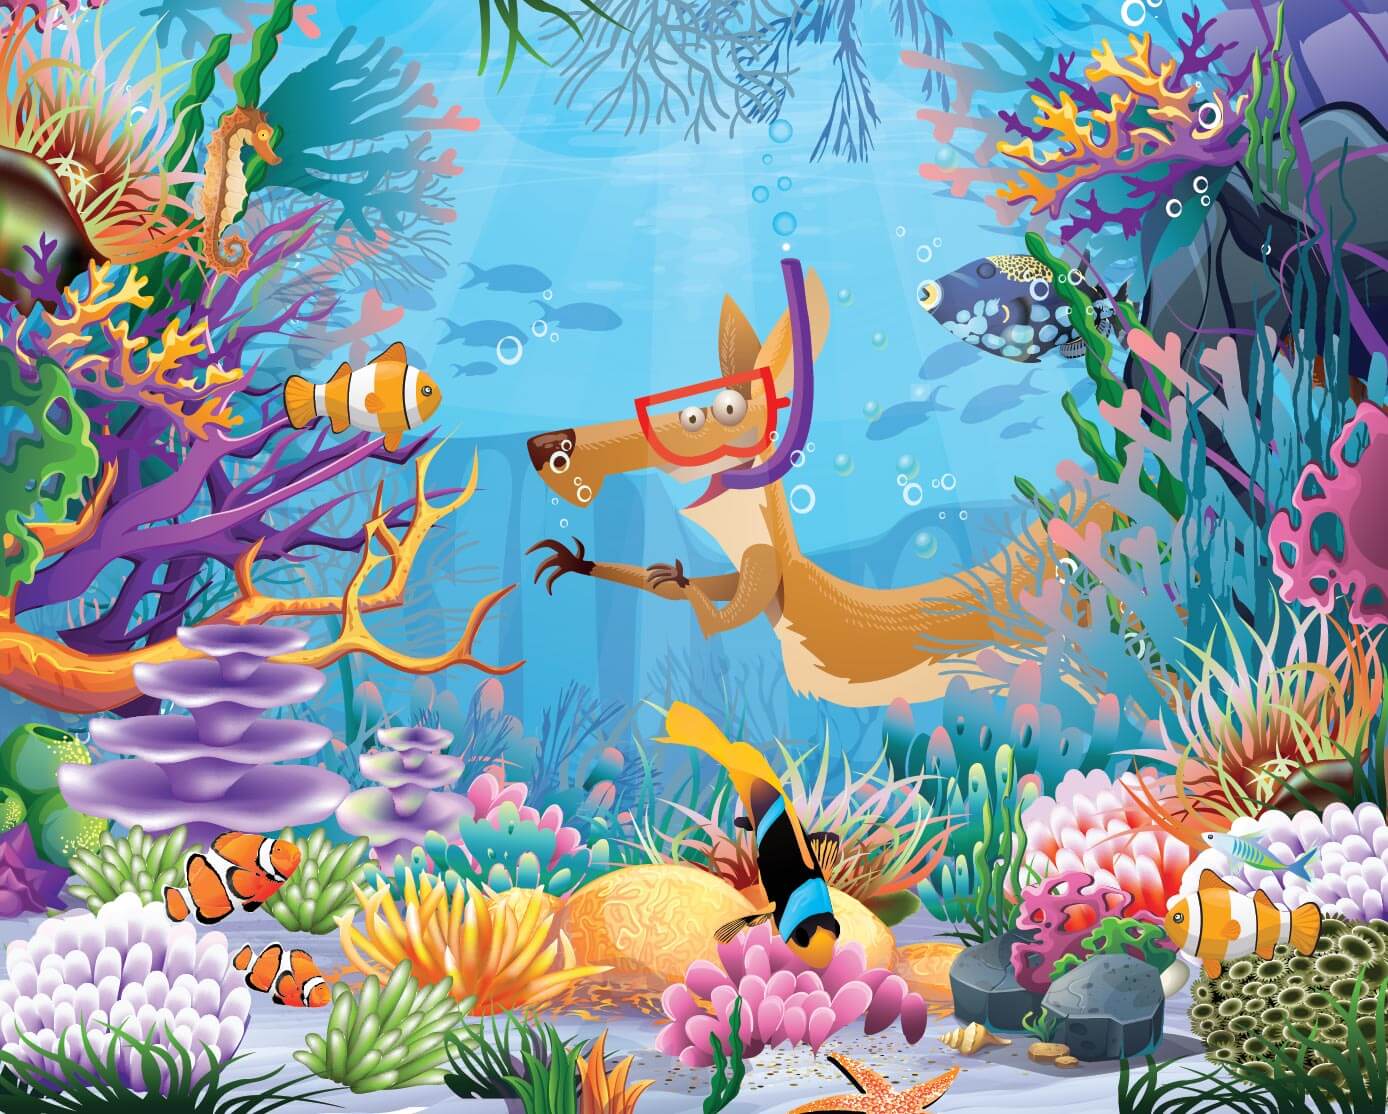 Jumpy équipé d'un masque et d'un tuba nageant parmi ses amis au sein d'un récif coralien